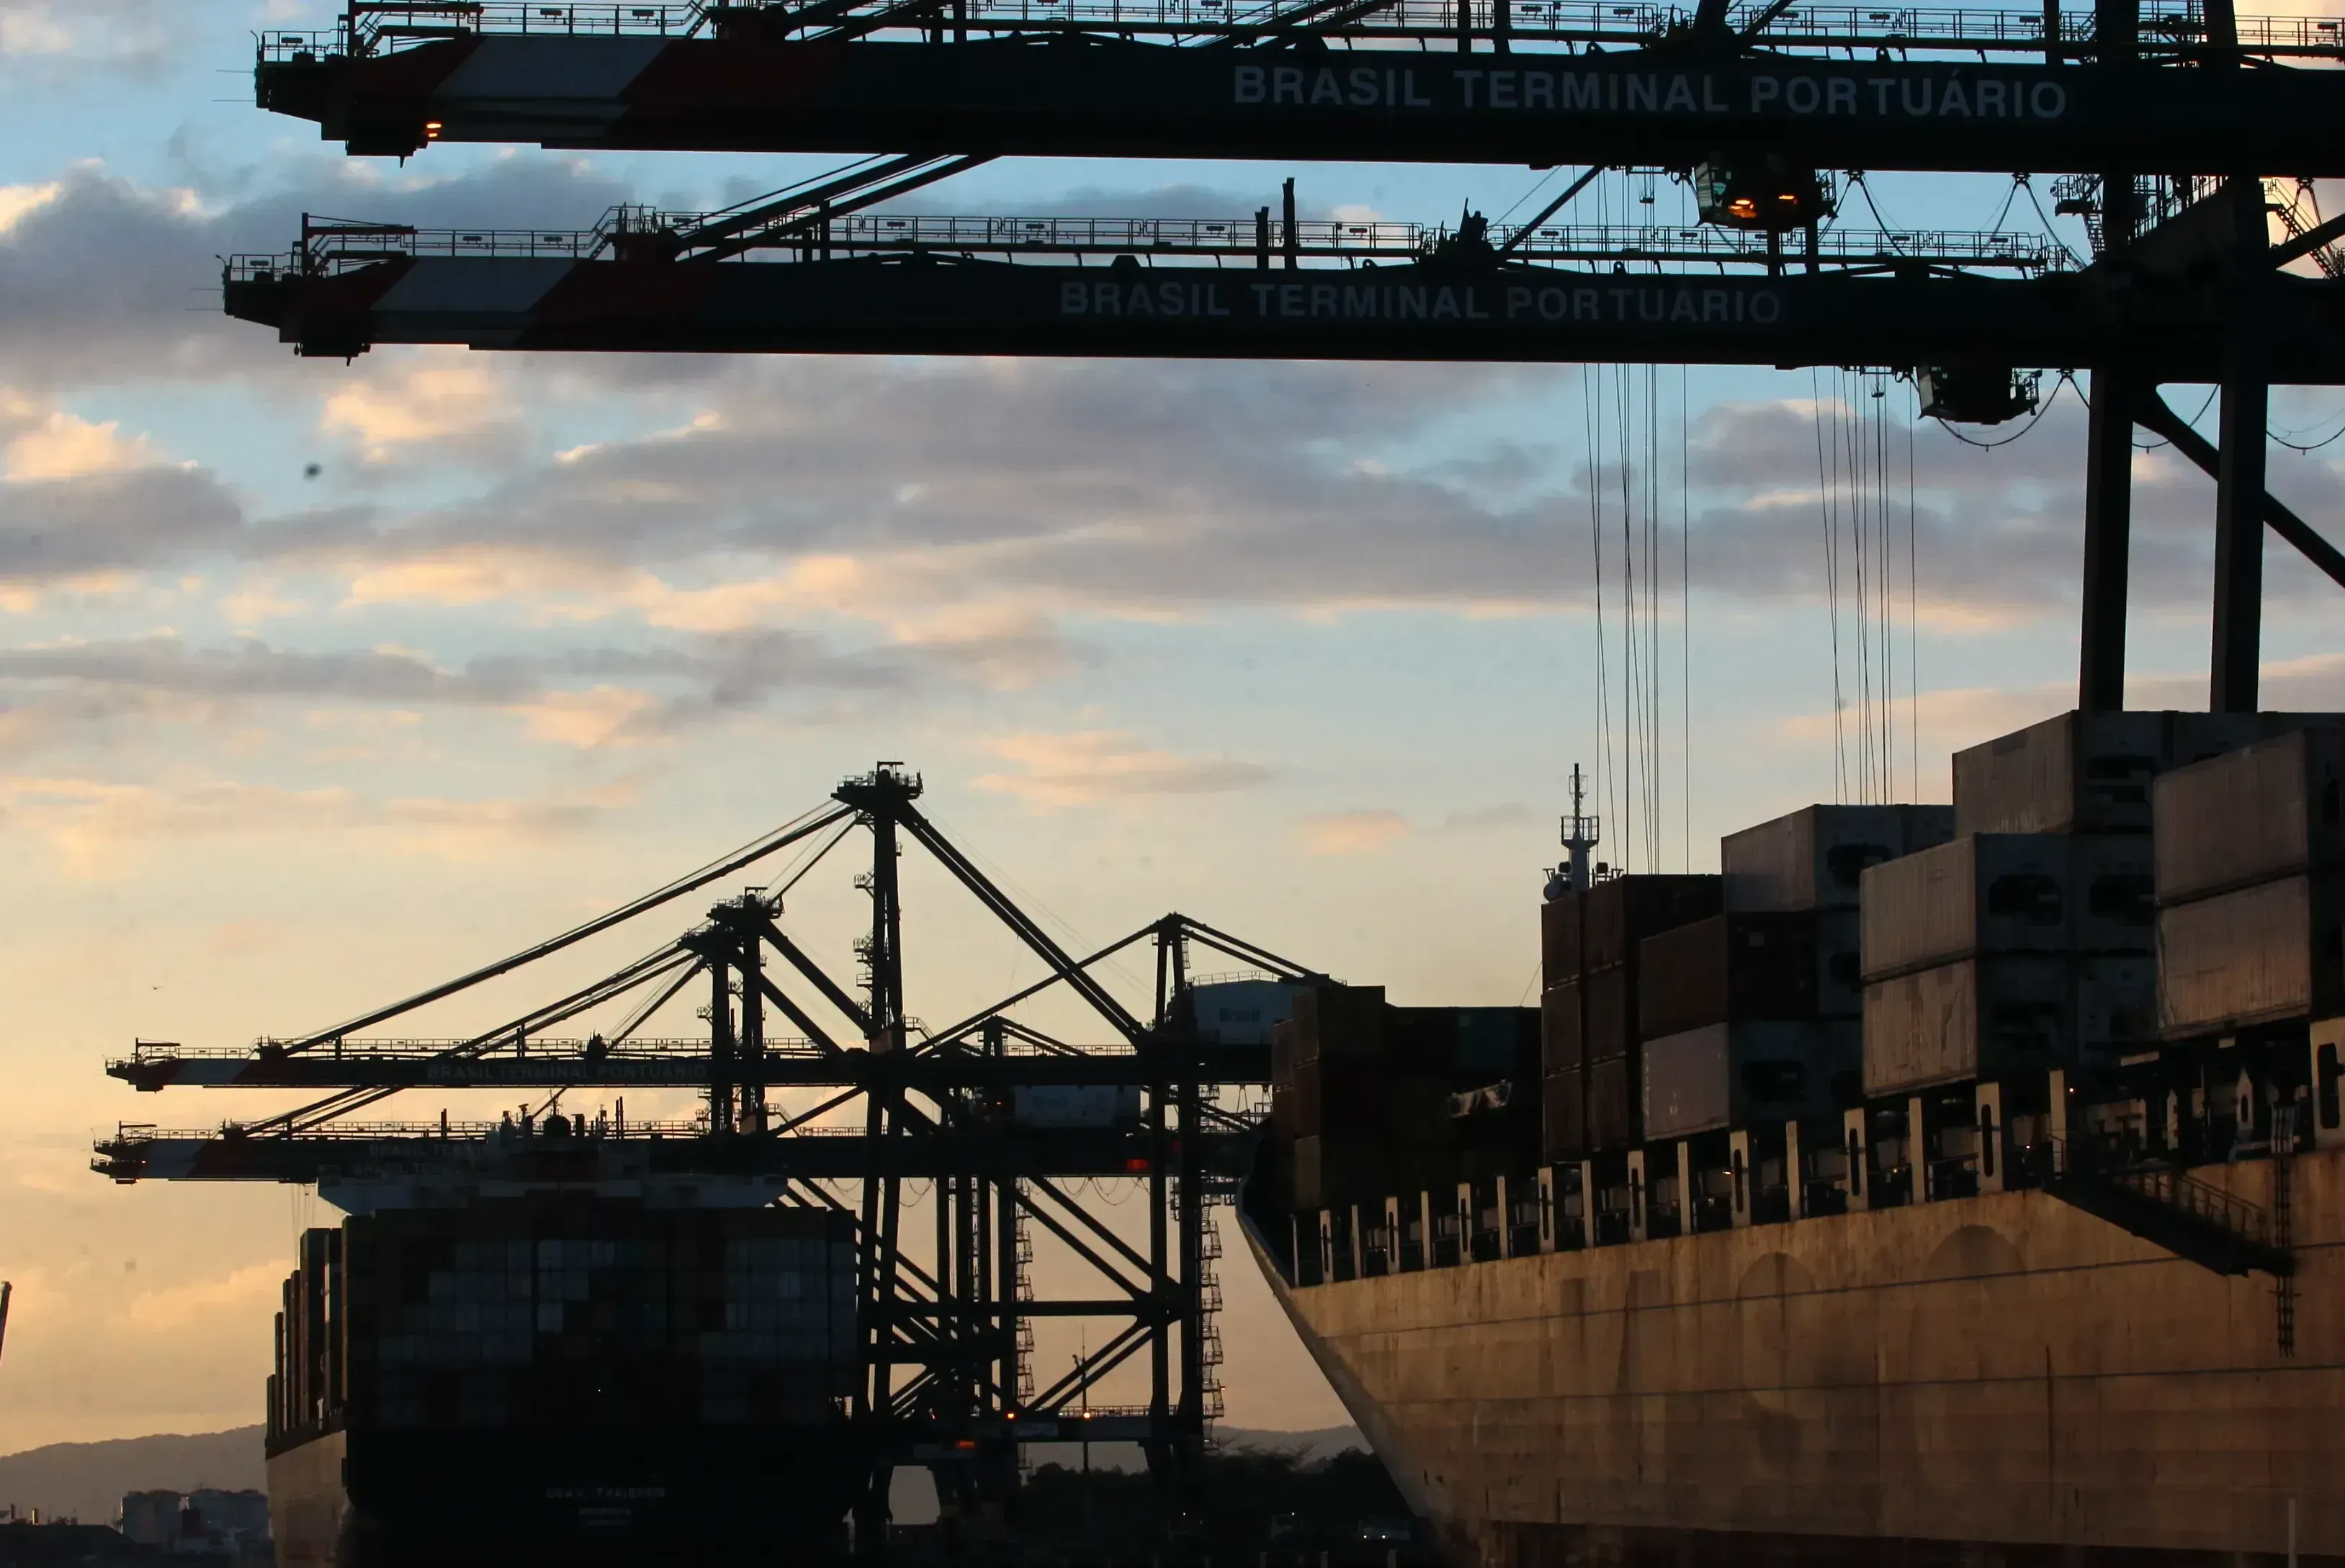 Regime Tributário para Incentivo à Modernização e à Ampliação da Estrutura Portuária (Reporto) visa a prorrogação de incentivos fiscais para o setor portuário